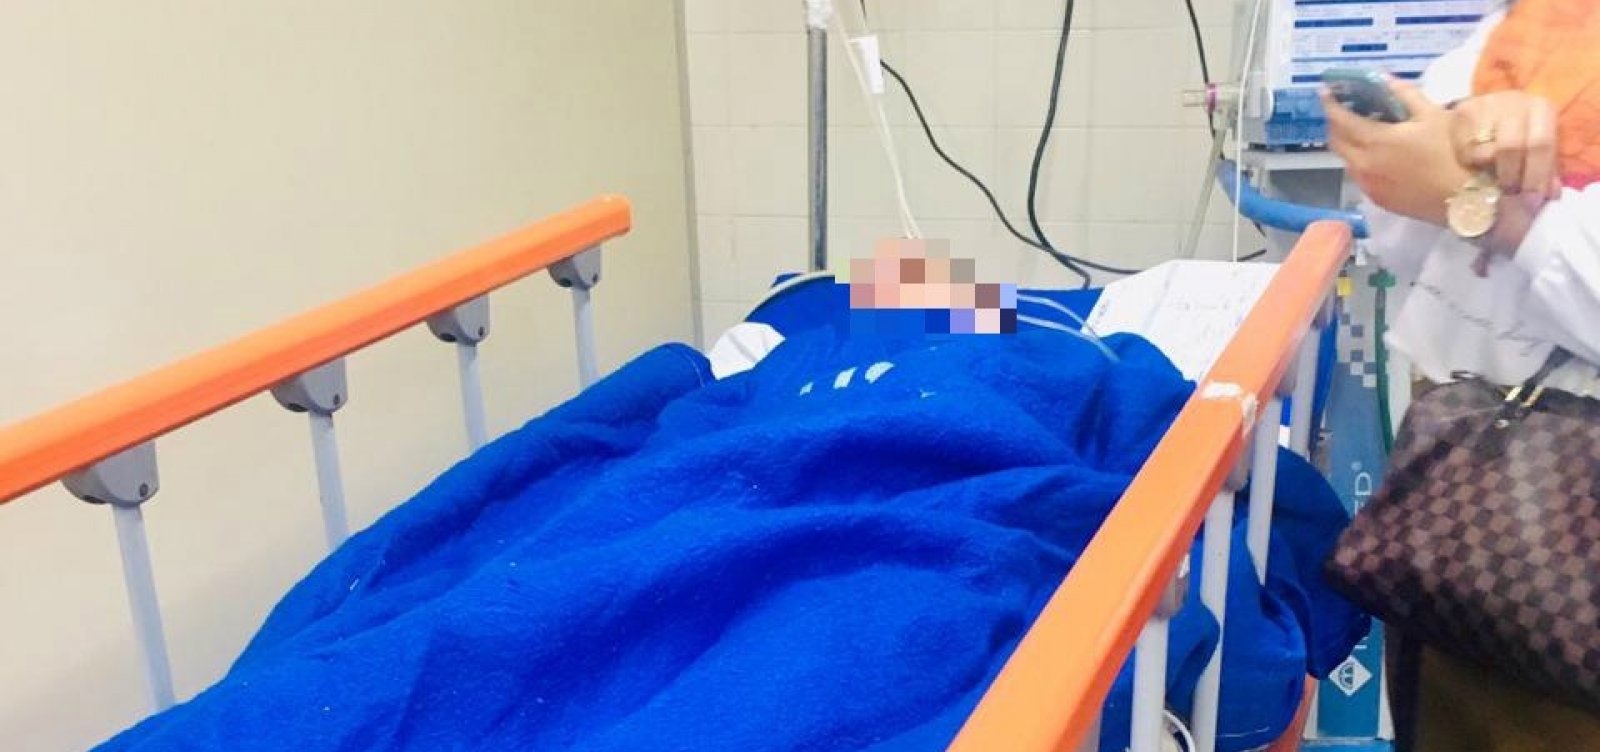 Salvador: jovem espancado após jogo do Brasil recebe alta hospitalar